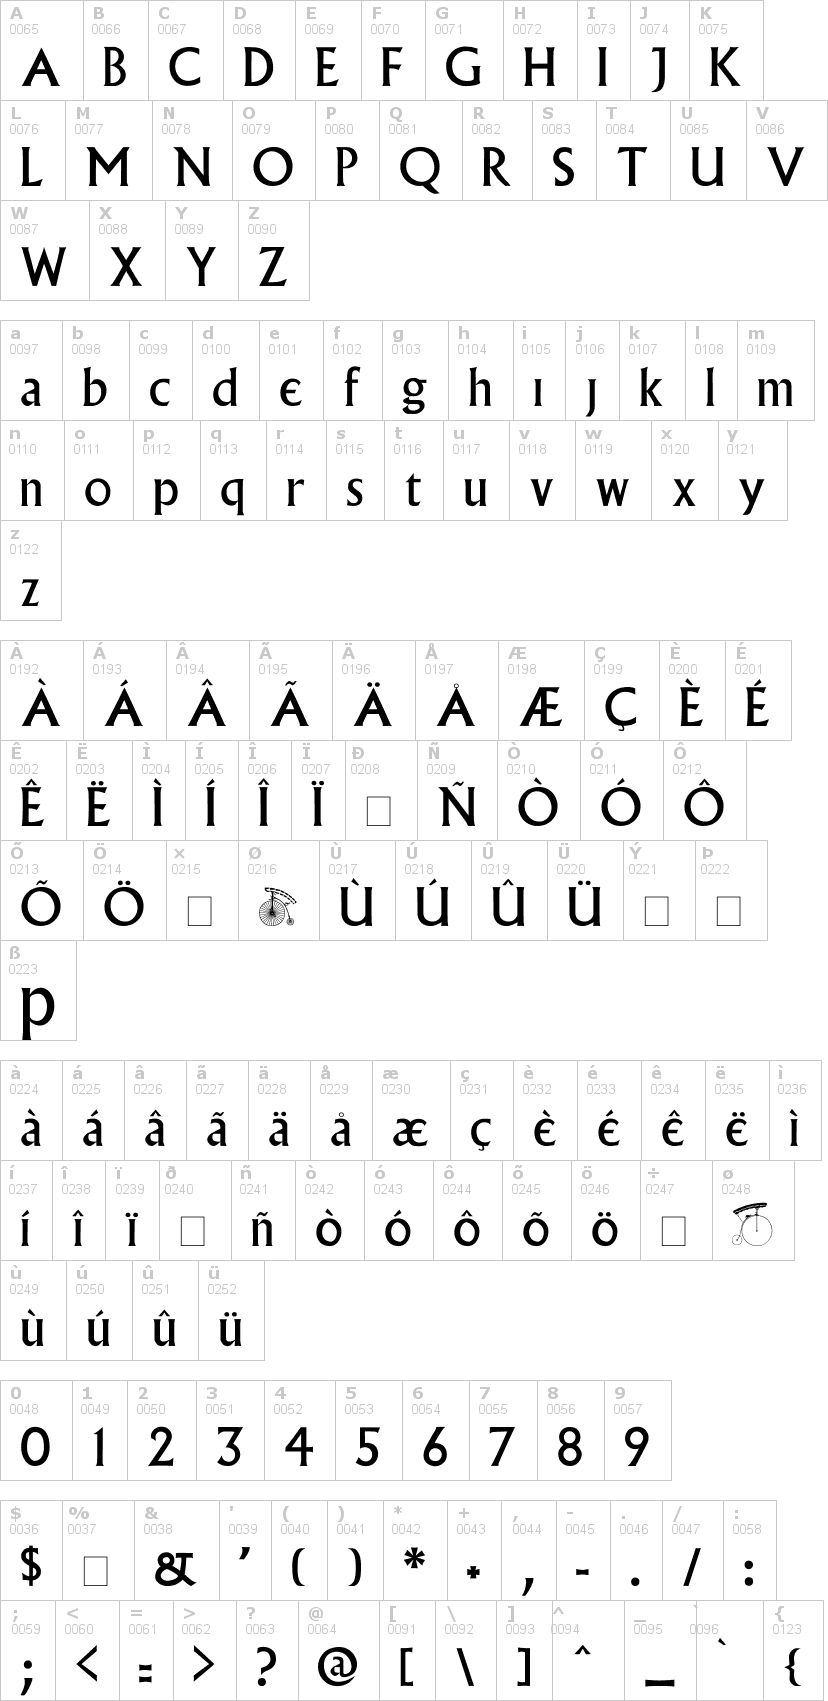 Lettere dell'alfabeto del font prisoner con le quali è possibile realizzare adesivi prespaziati